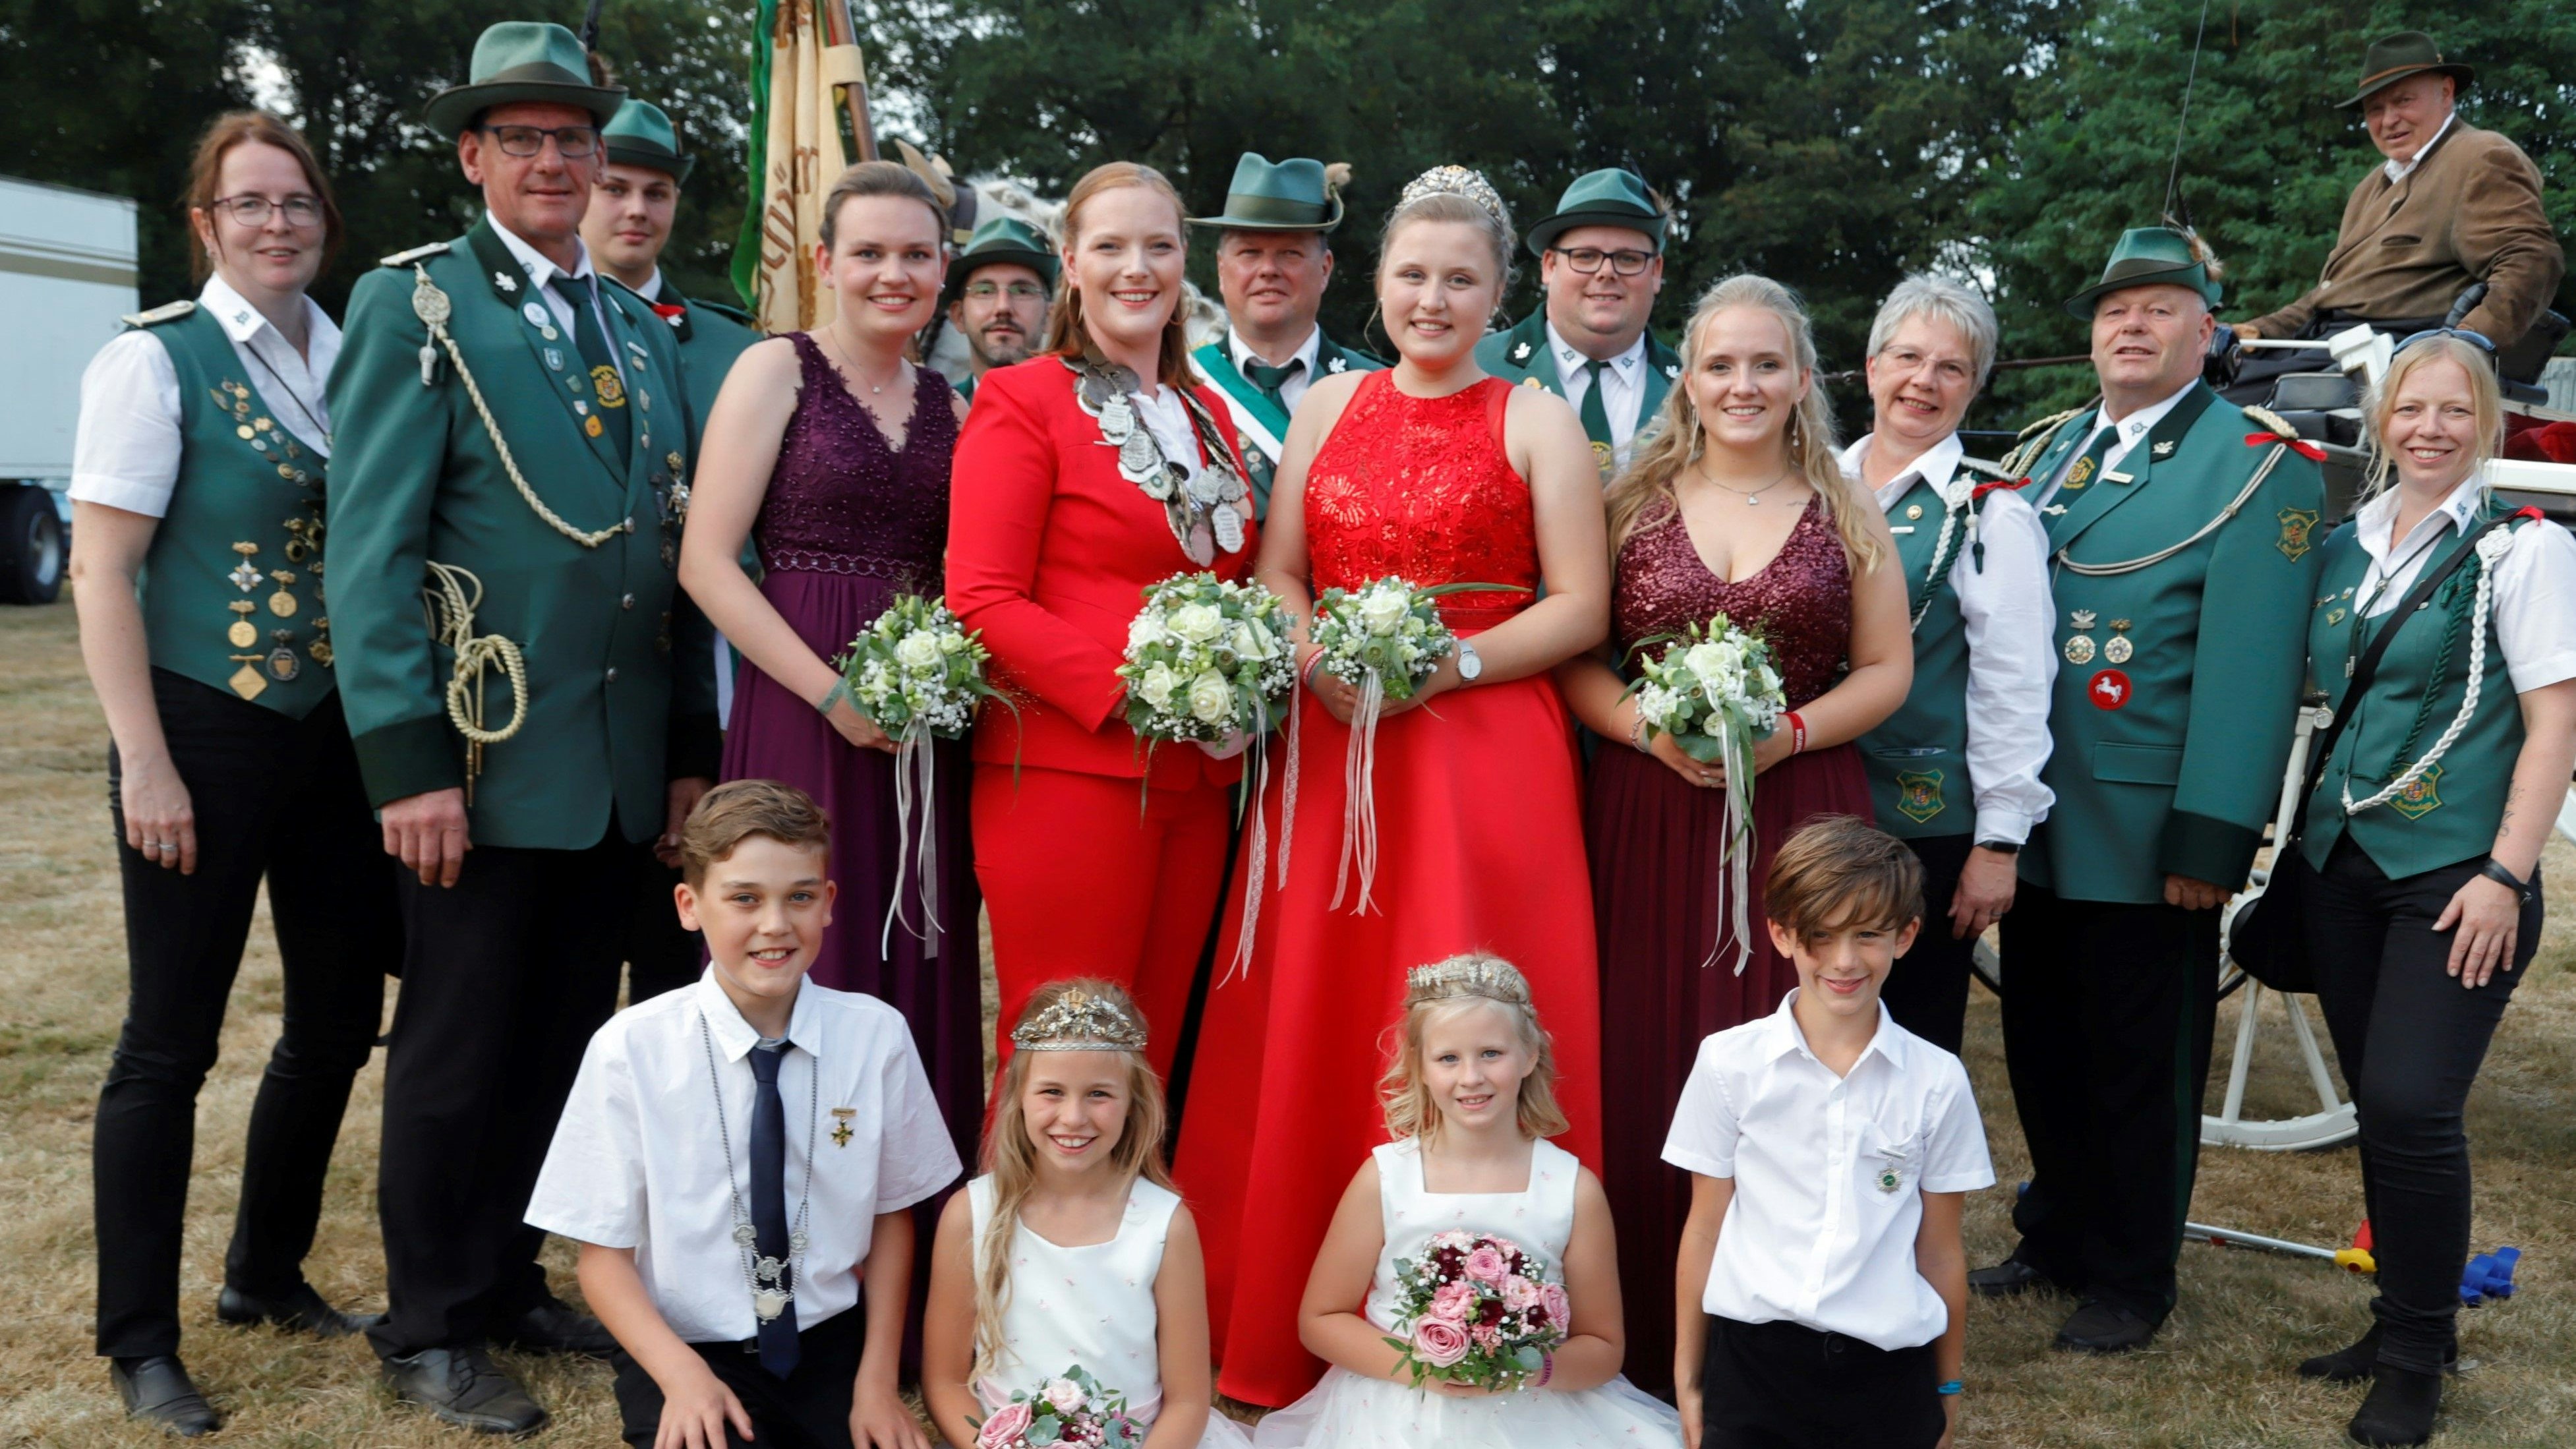 Farbenfroh präsentiert sich der neue Königsthron des Schützenvereins Harkebrügge mit Königin Eva-Maria Oeltjenbruns (Mitte mit Kette). Foto: Passmann